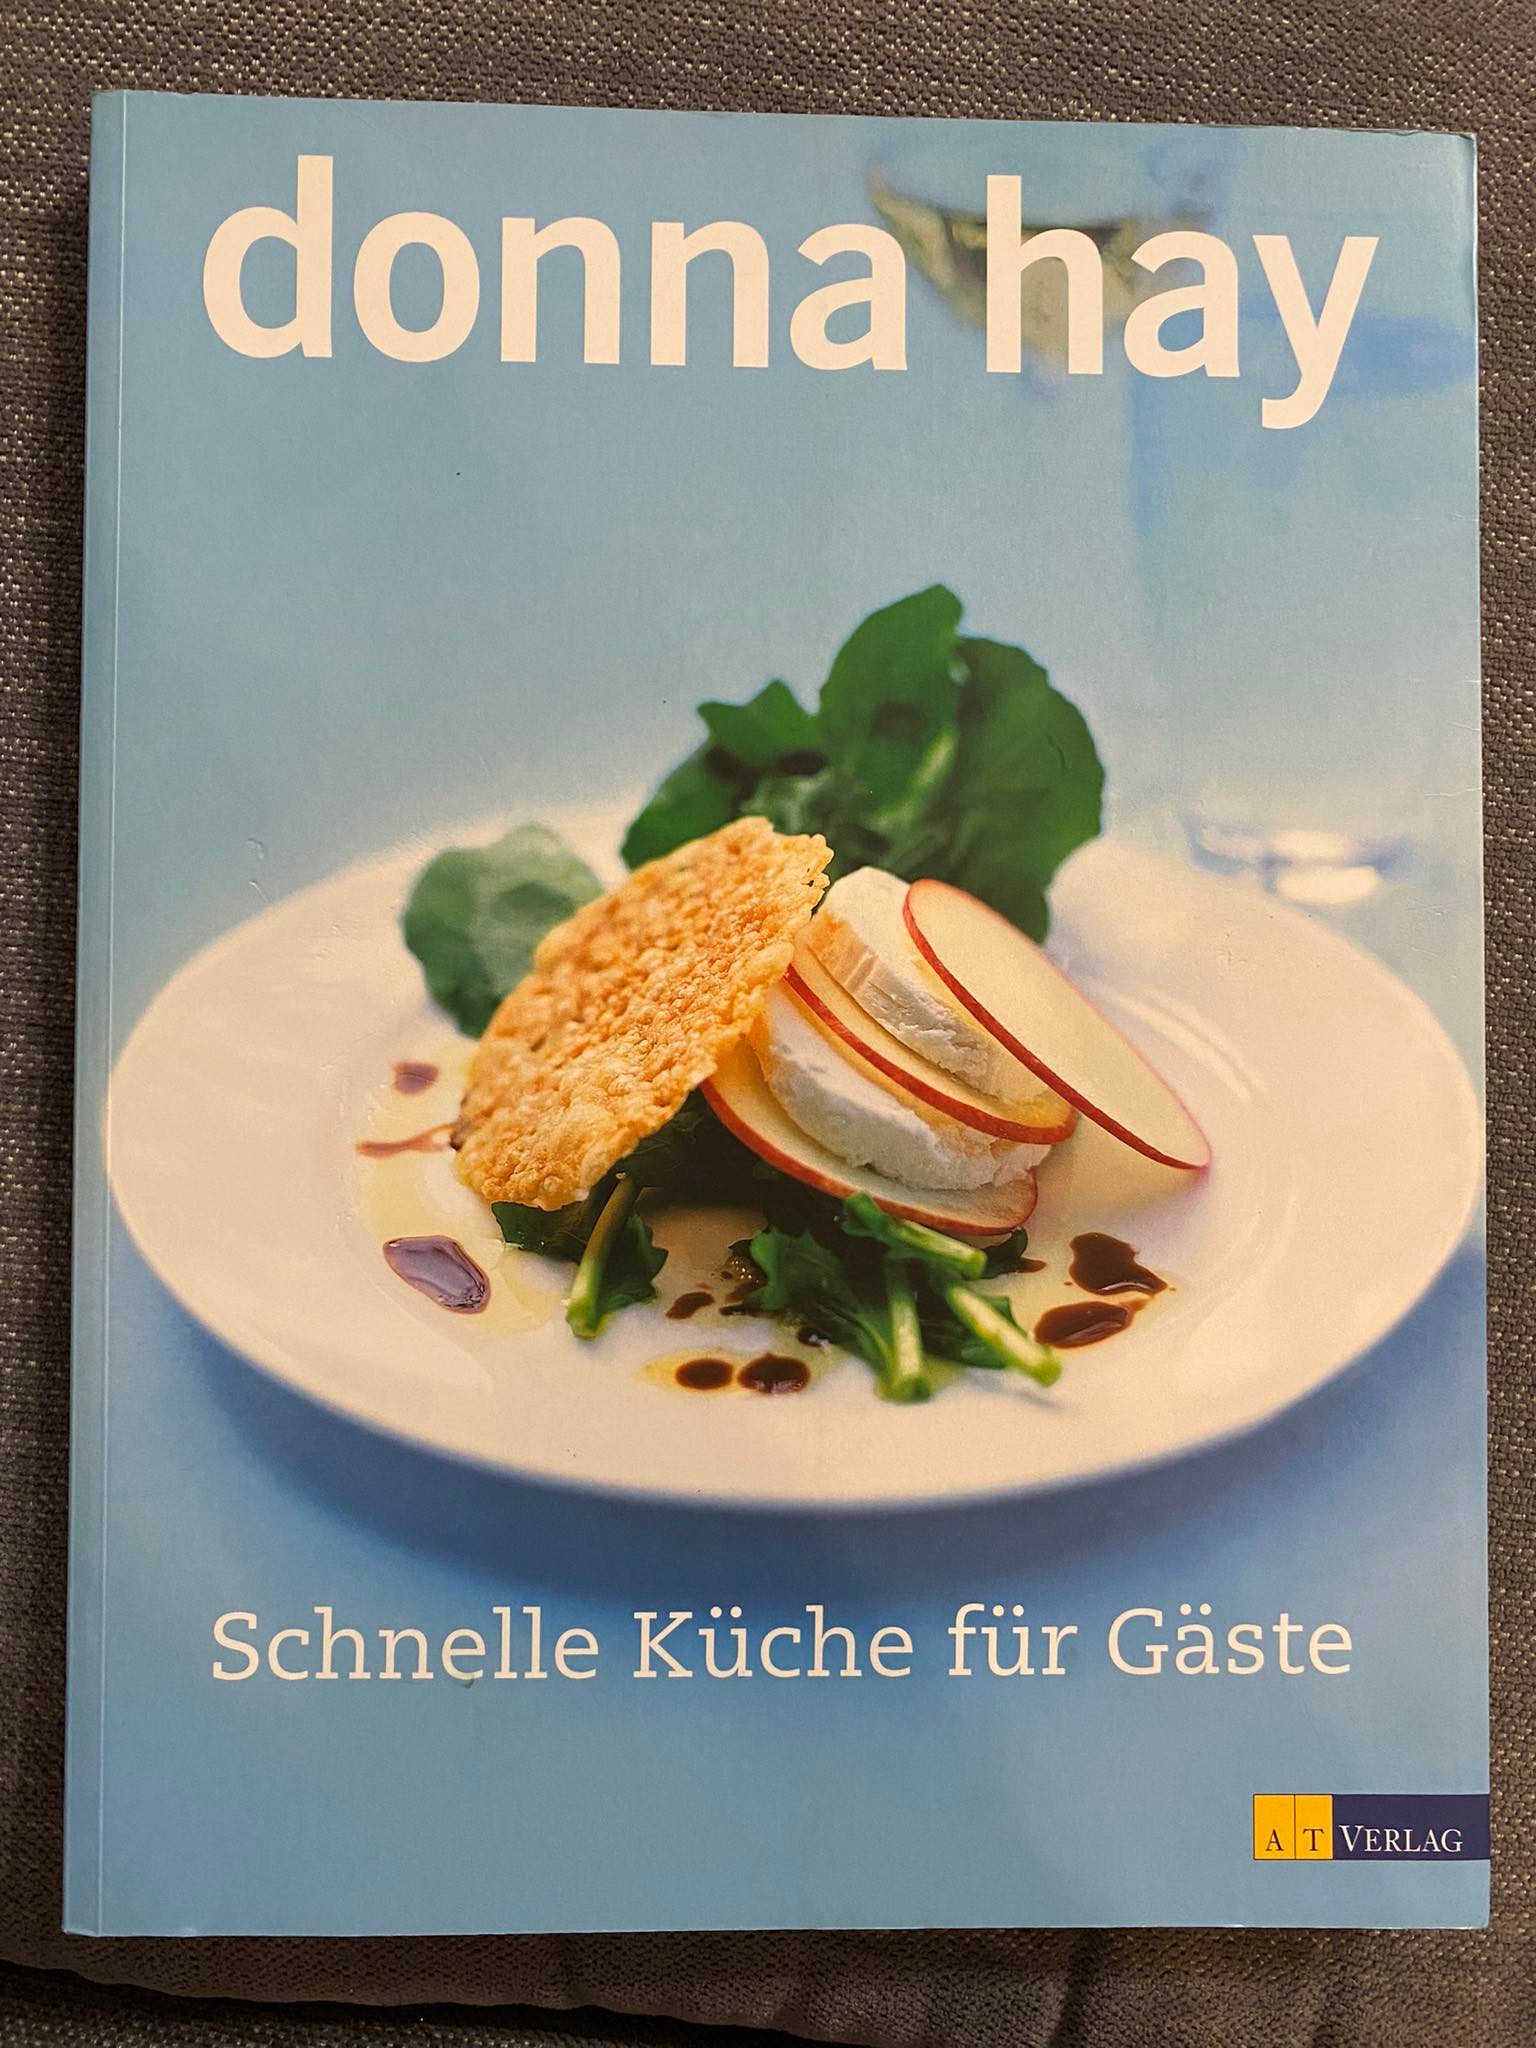 Schnelle Küche für Gäste – Donna Hay